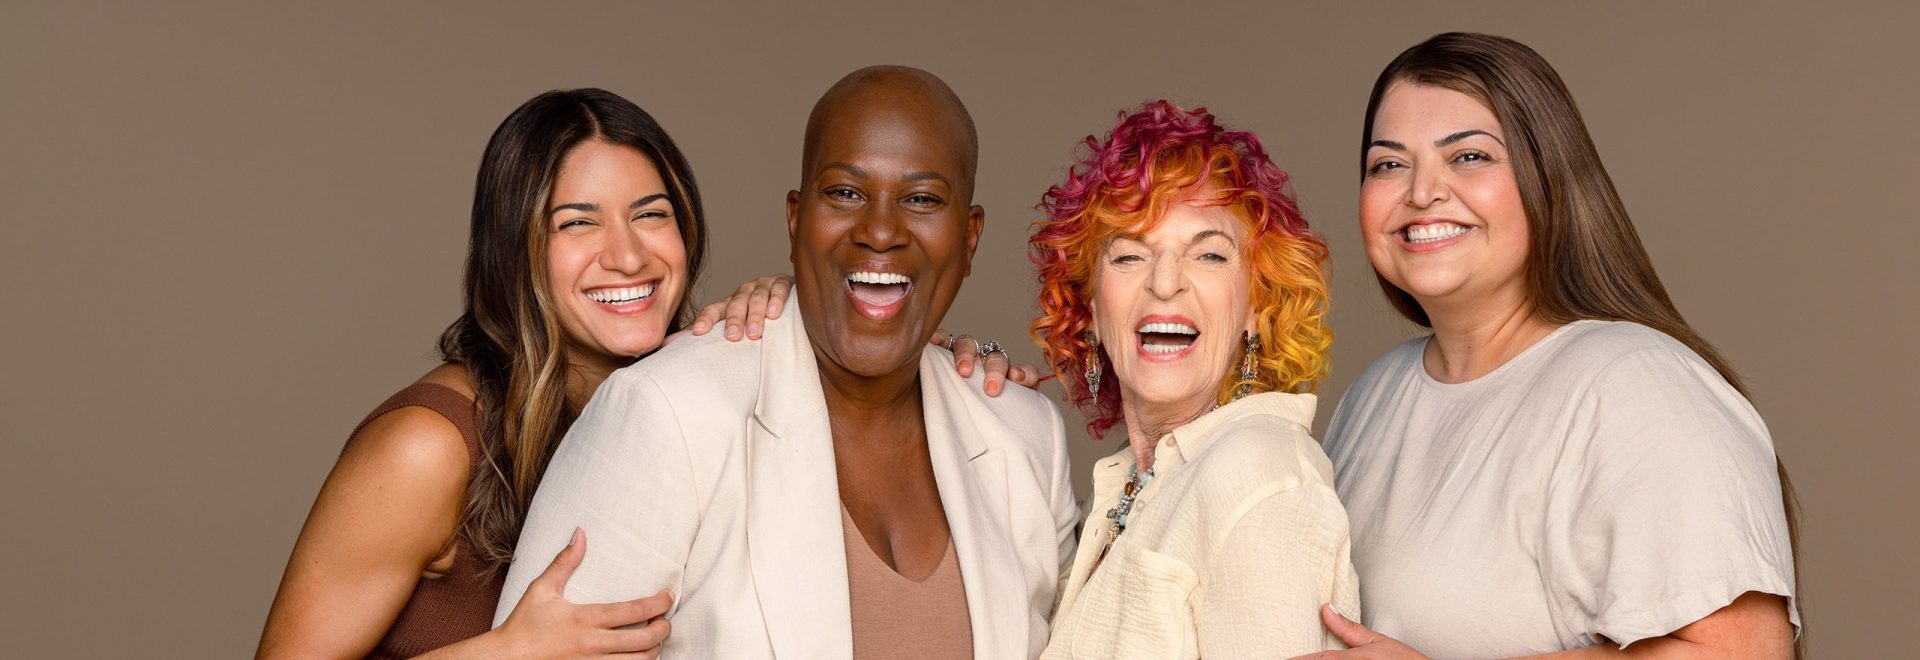 Quatre femmes de bonne humeur, riant et souriant